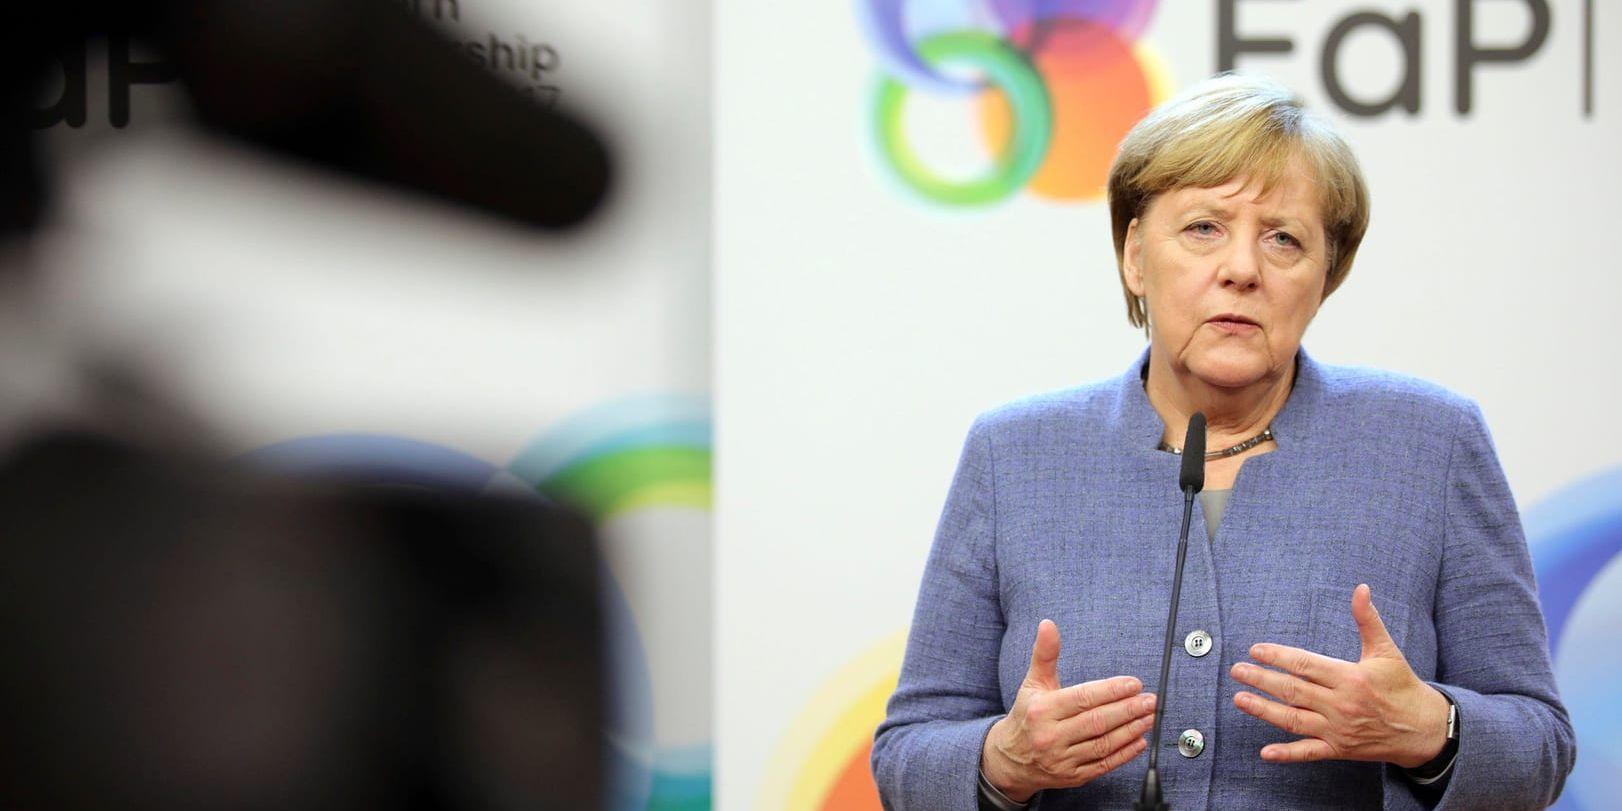 En dag efter att socialdemokratiska SPD gått med på samtal om en eventuell koalition säger Tysklands kristdemokratiska förbundskansler Angela Merkel att Europa behöver att en tysk regering kan bildas "mycket snart".